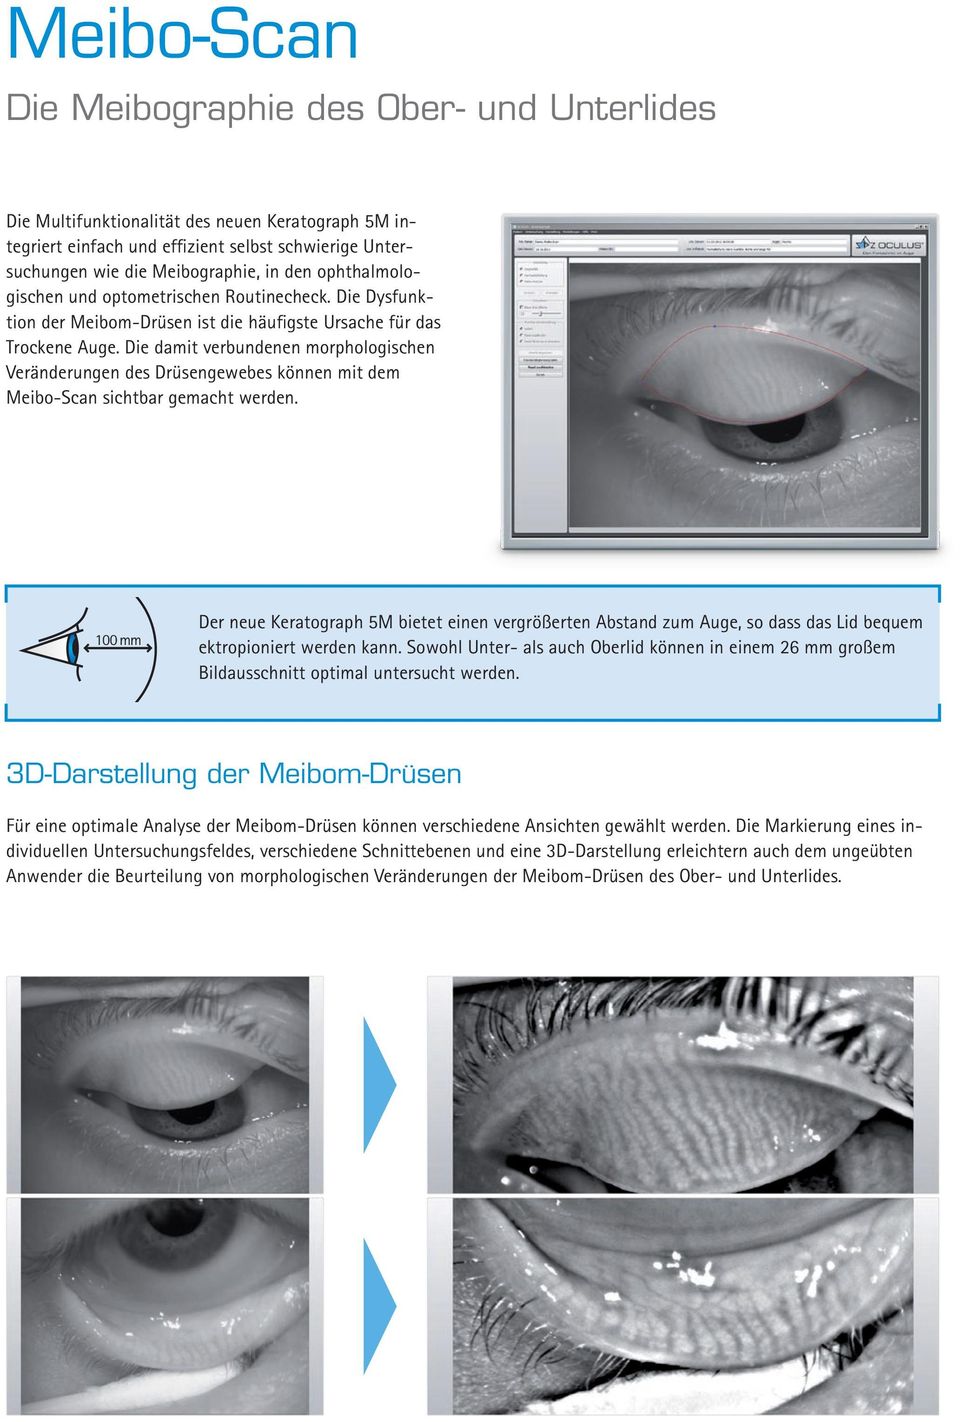 Die damit verbundenen morphologischen Veränderungen des Drüsengewebes können mit dem Meibo-Scan sichtbar gemacht werden.